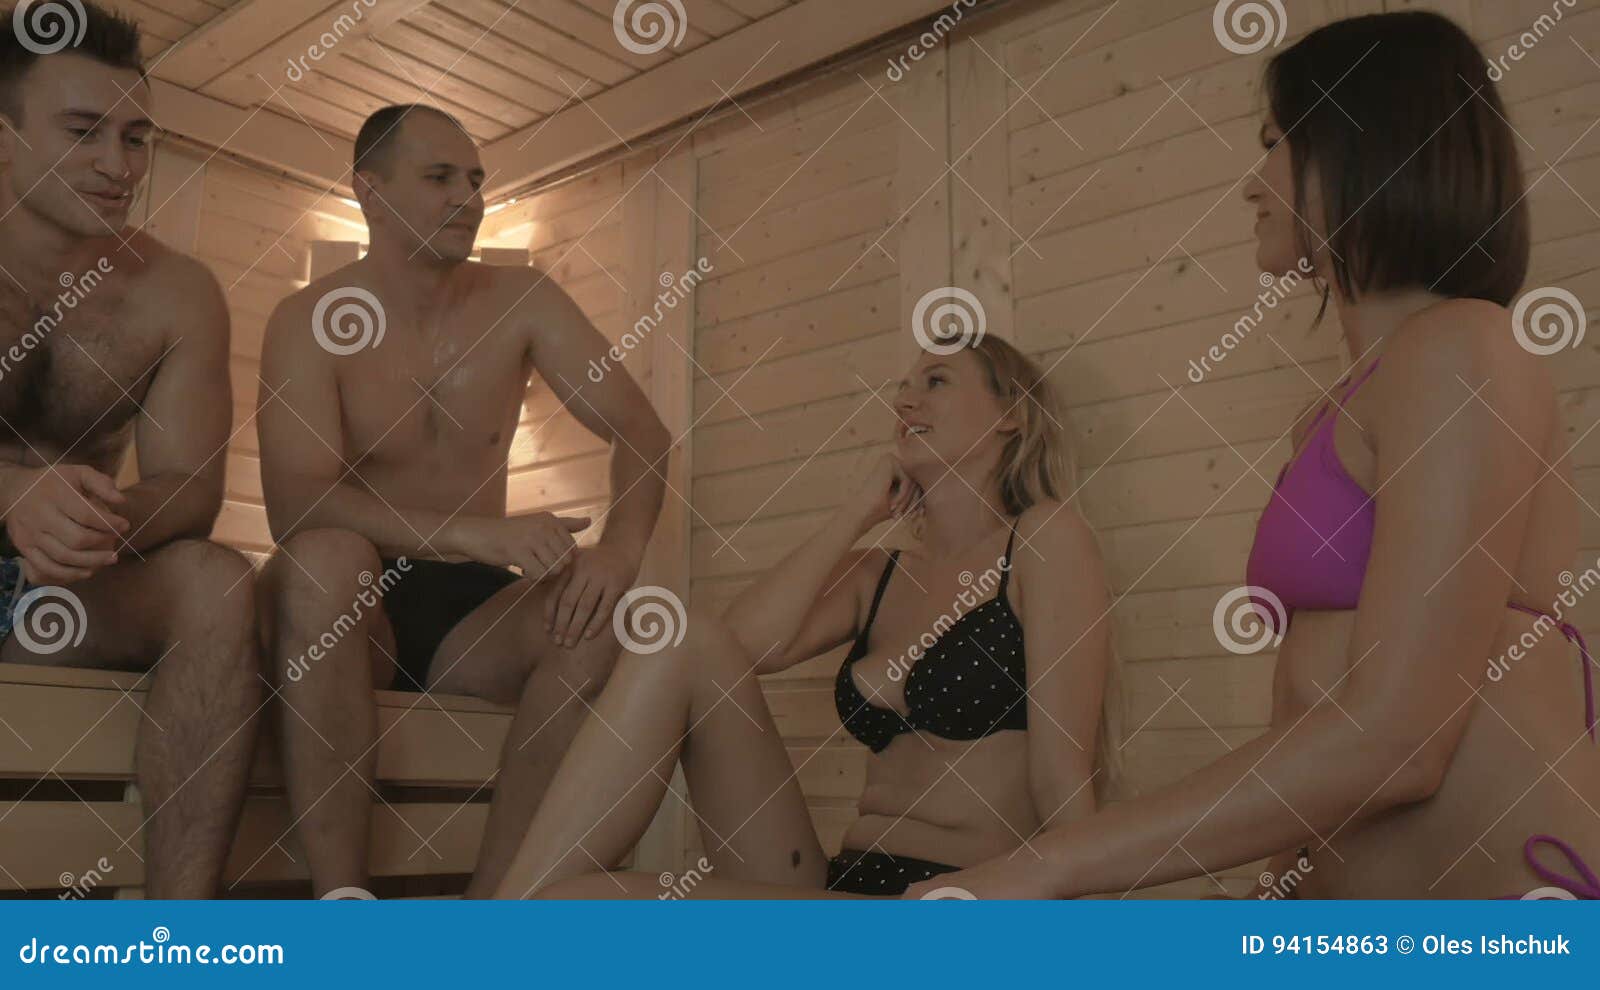 в бане с нашими женами поменялись порно рассказы фото 52